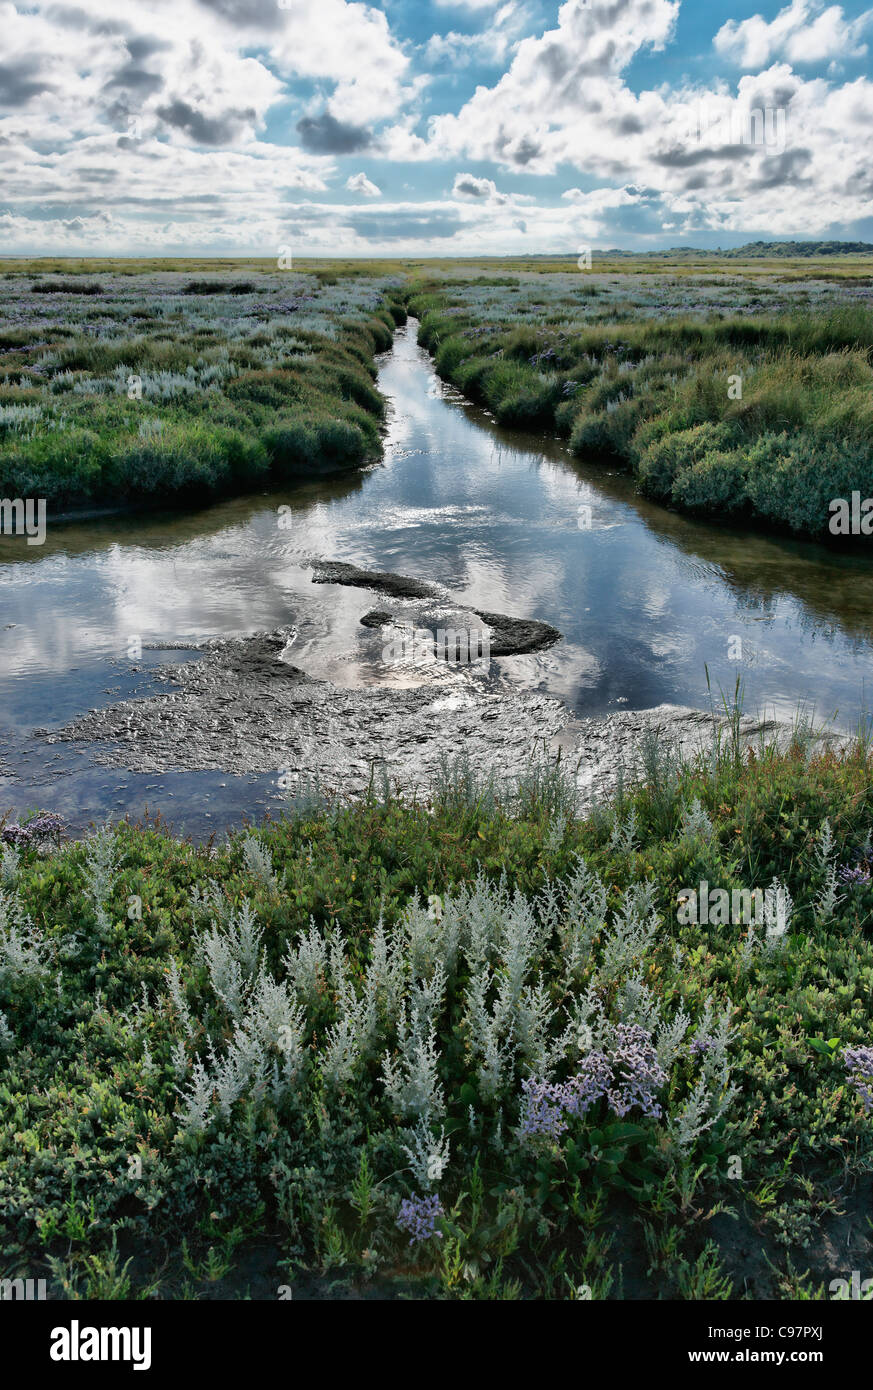 Salt Marsh, reflet de nuages dans l'eau, Règlement Loog, Mer du Nord, l'île de Juist Frise orientale, Basse-Saxe, Allemagne Banque D'Images